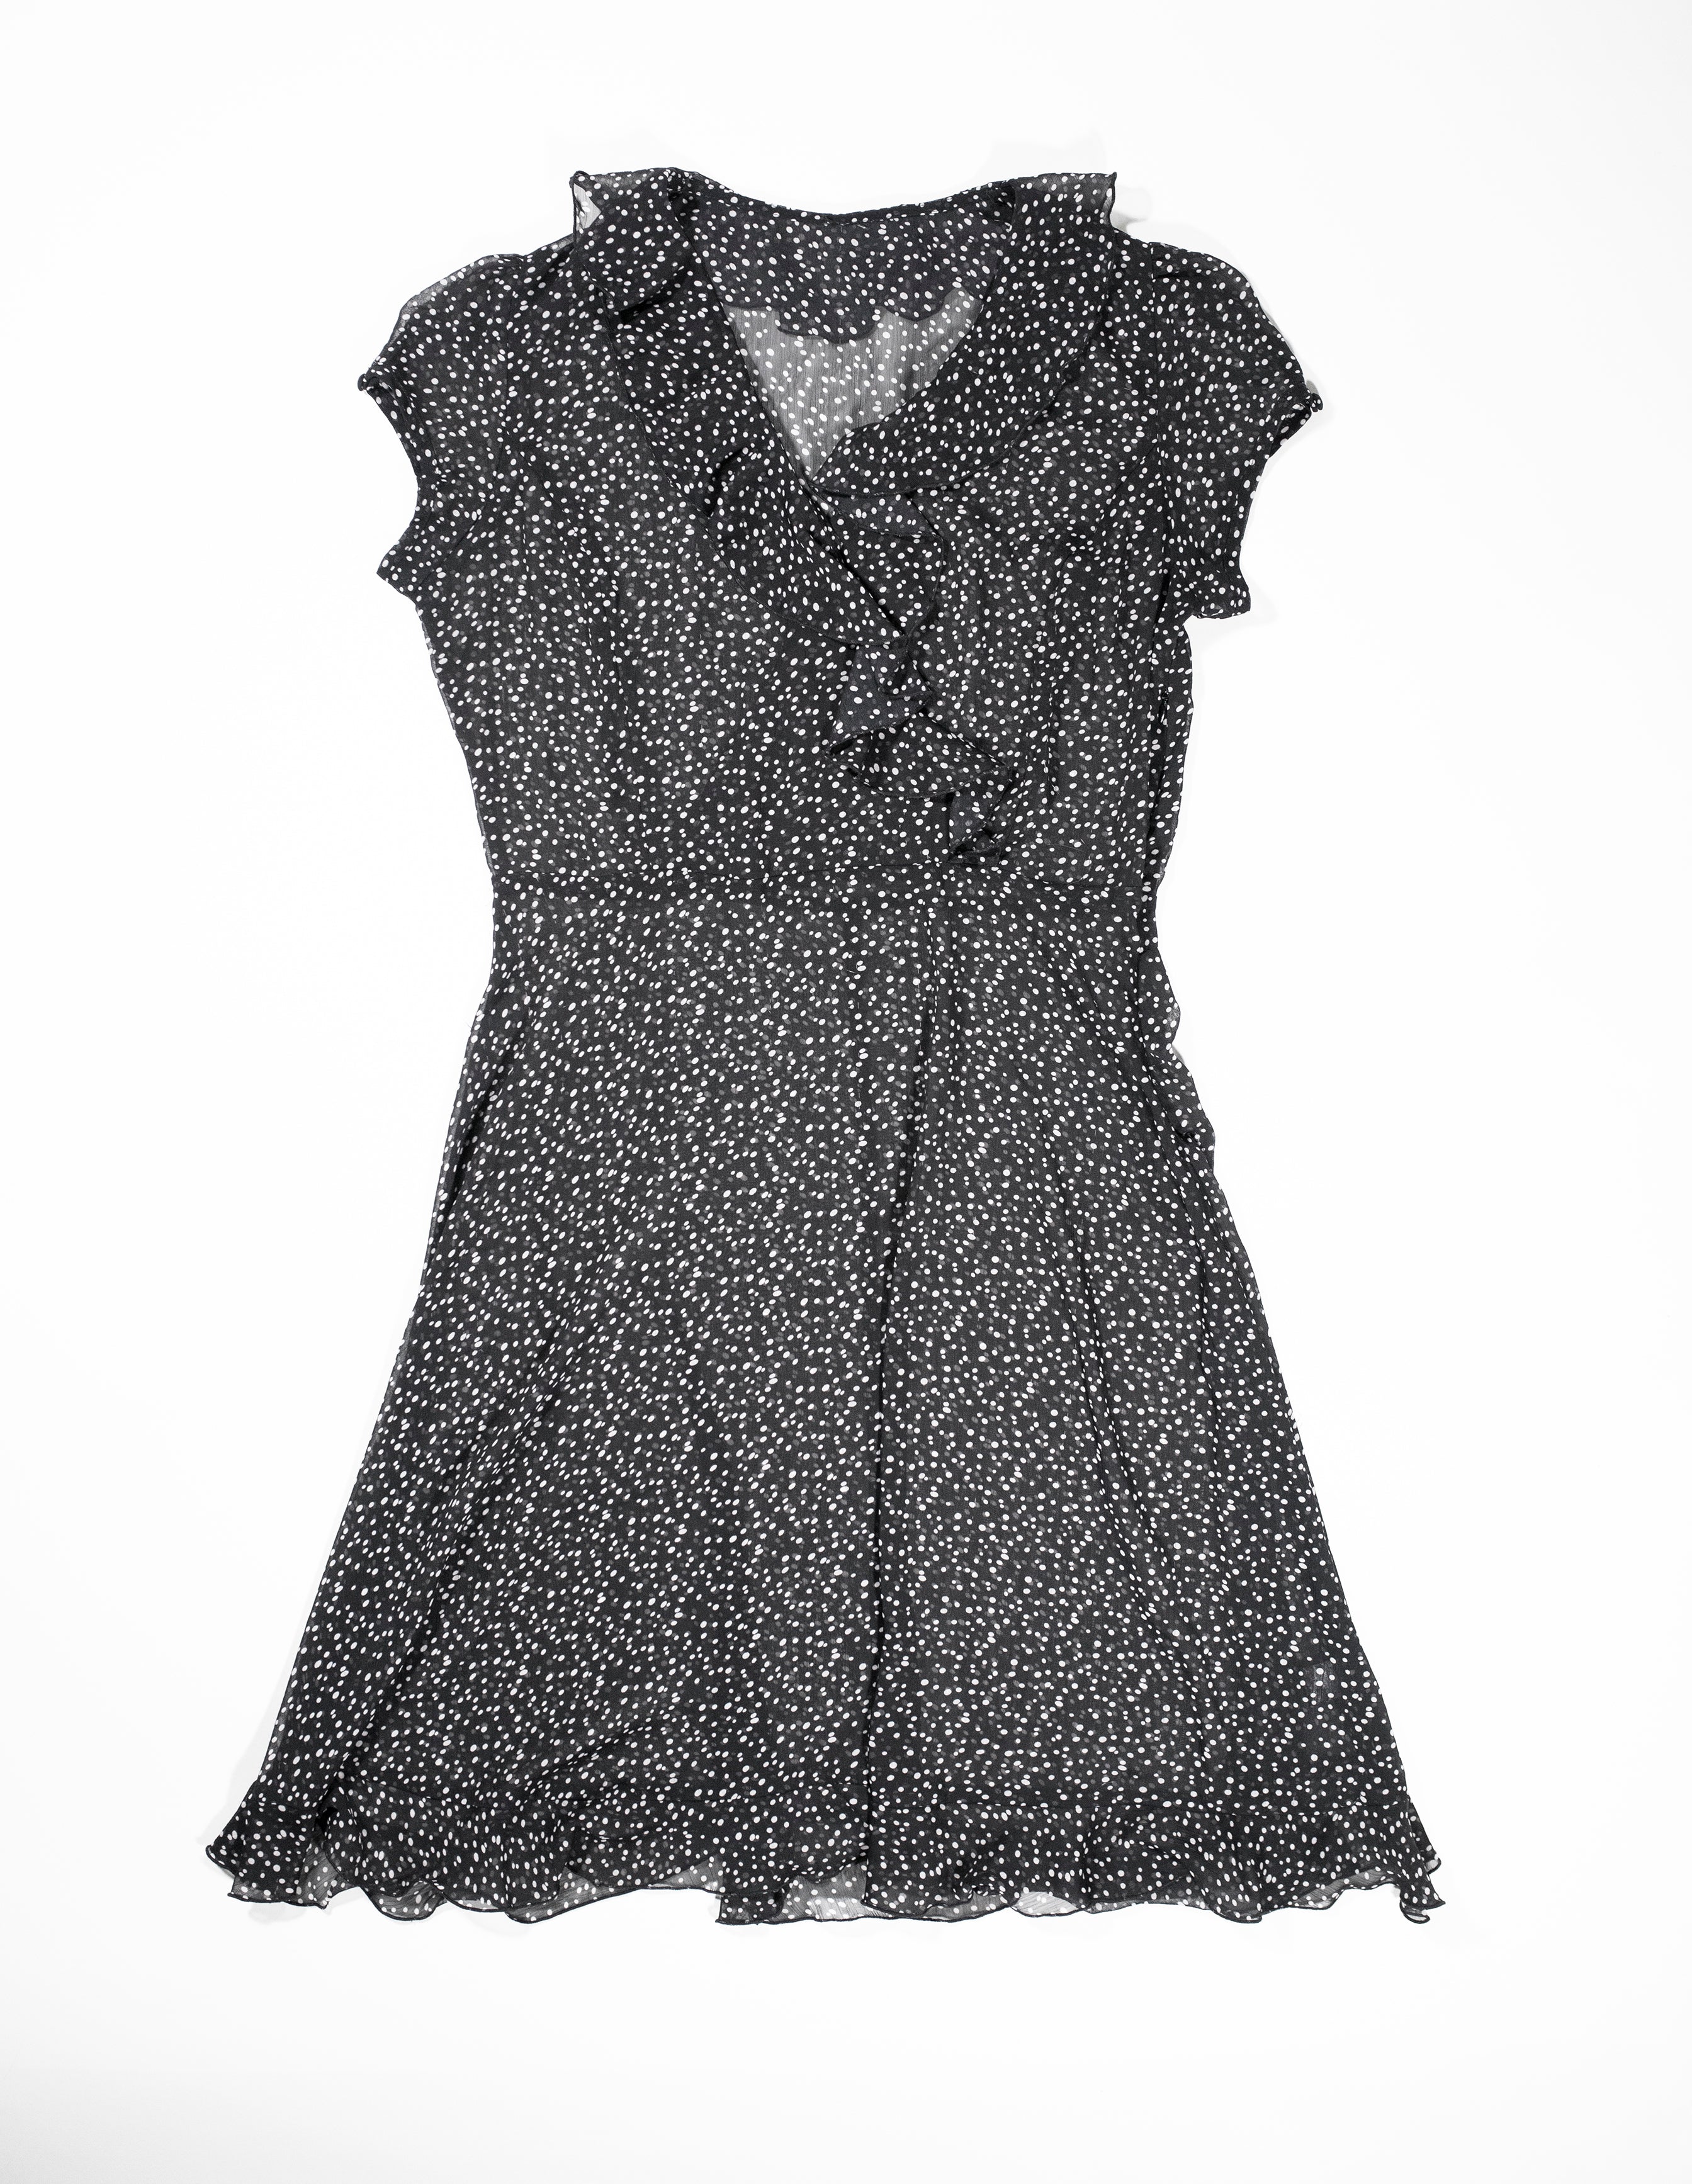 Vintage Black Polka Dot Sheer Dress